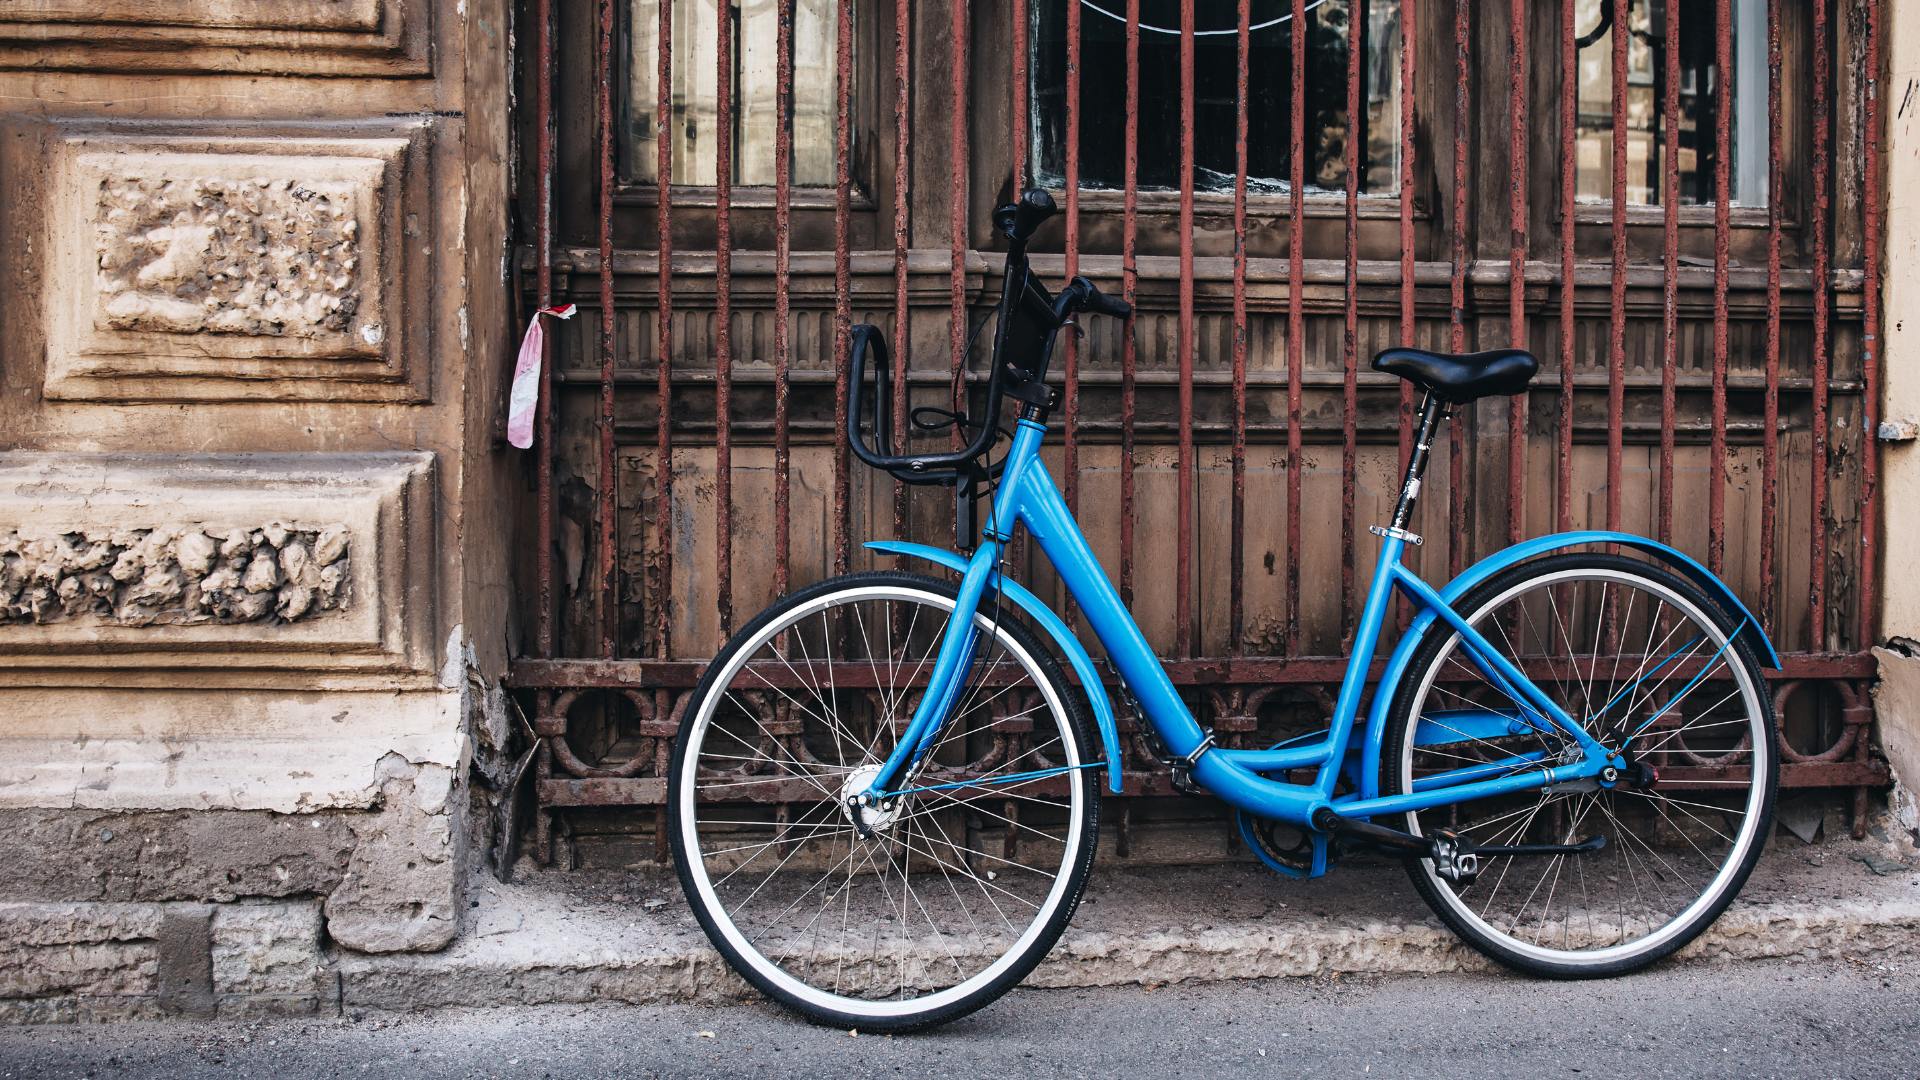 Sonhar com Bicicleta Azul: Qual é o Significado?